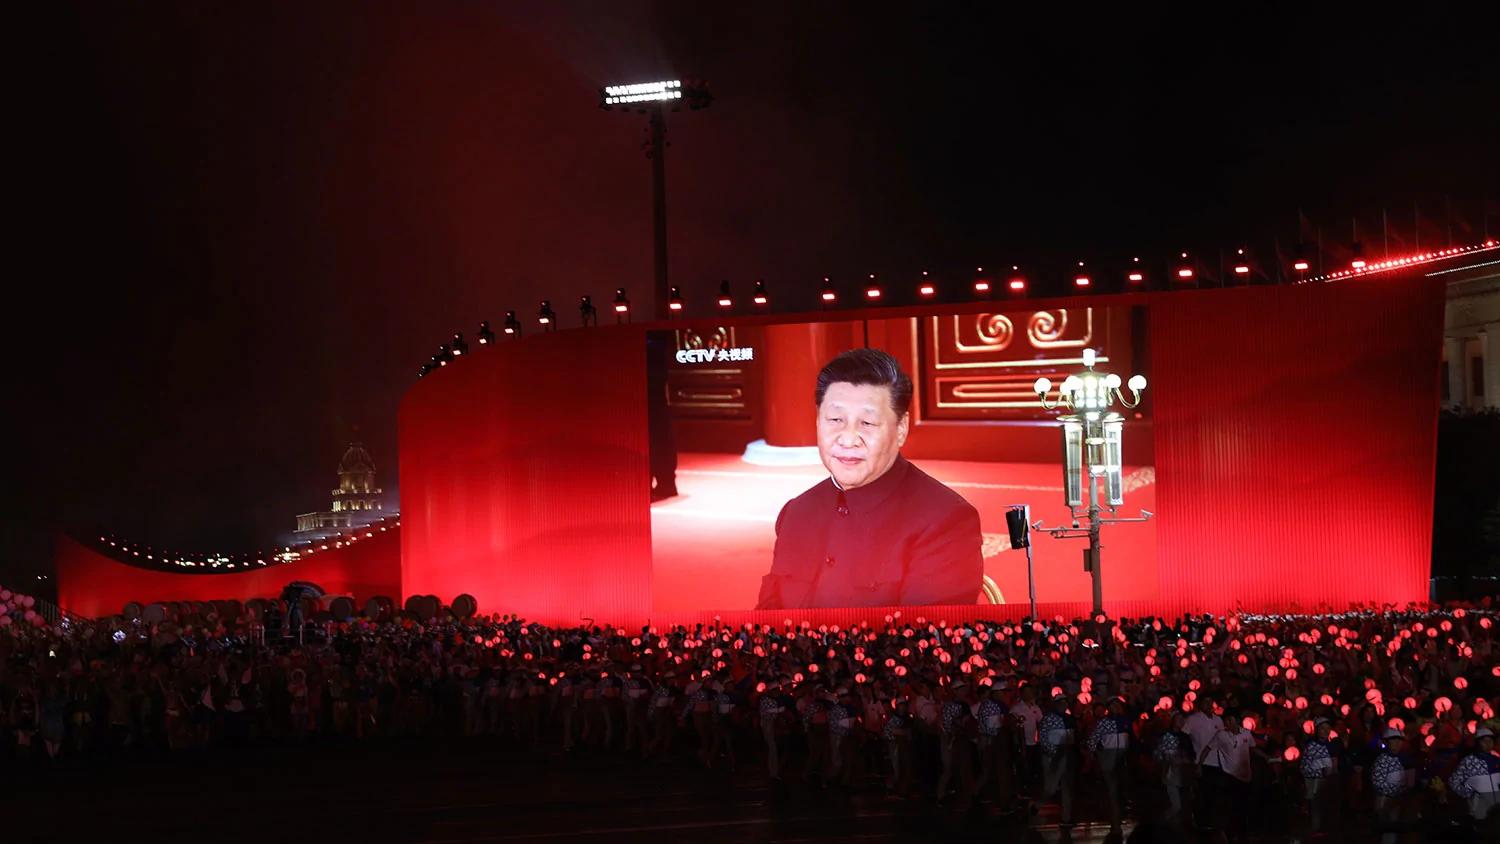 習近平考察湖南強調「紅色基因」 學者指在模仿毛澤東